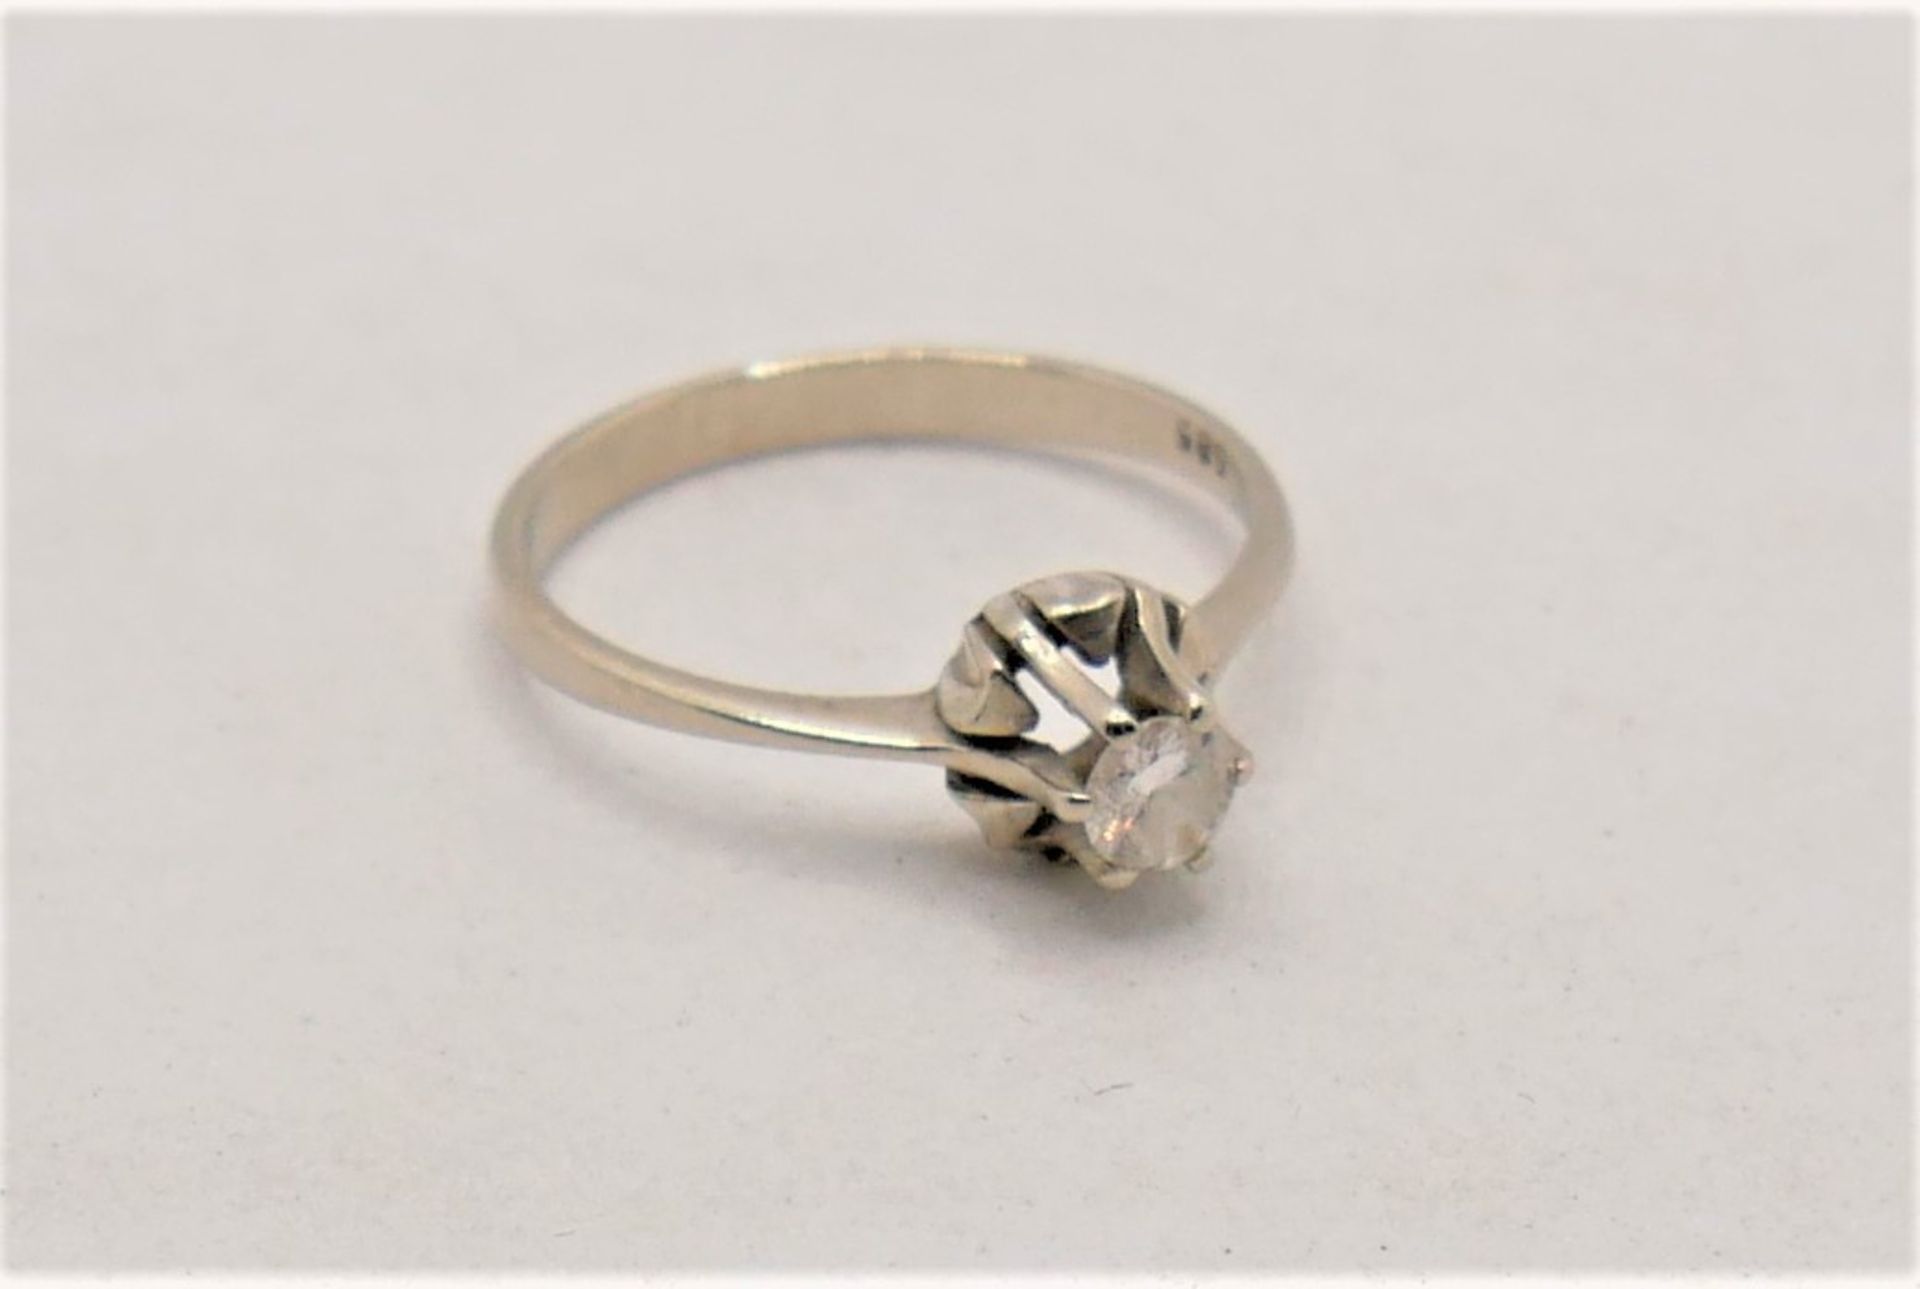 Damenring, 585er Weißgold, besetzt mit Diamant, Punze 0,21 ct, leichte Einschlüsse. Ringgröße 55,